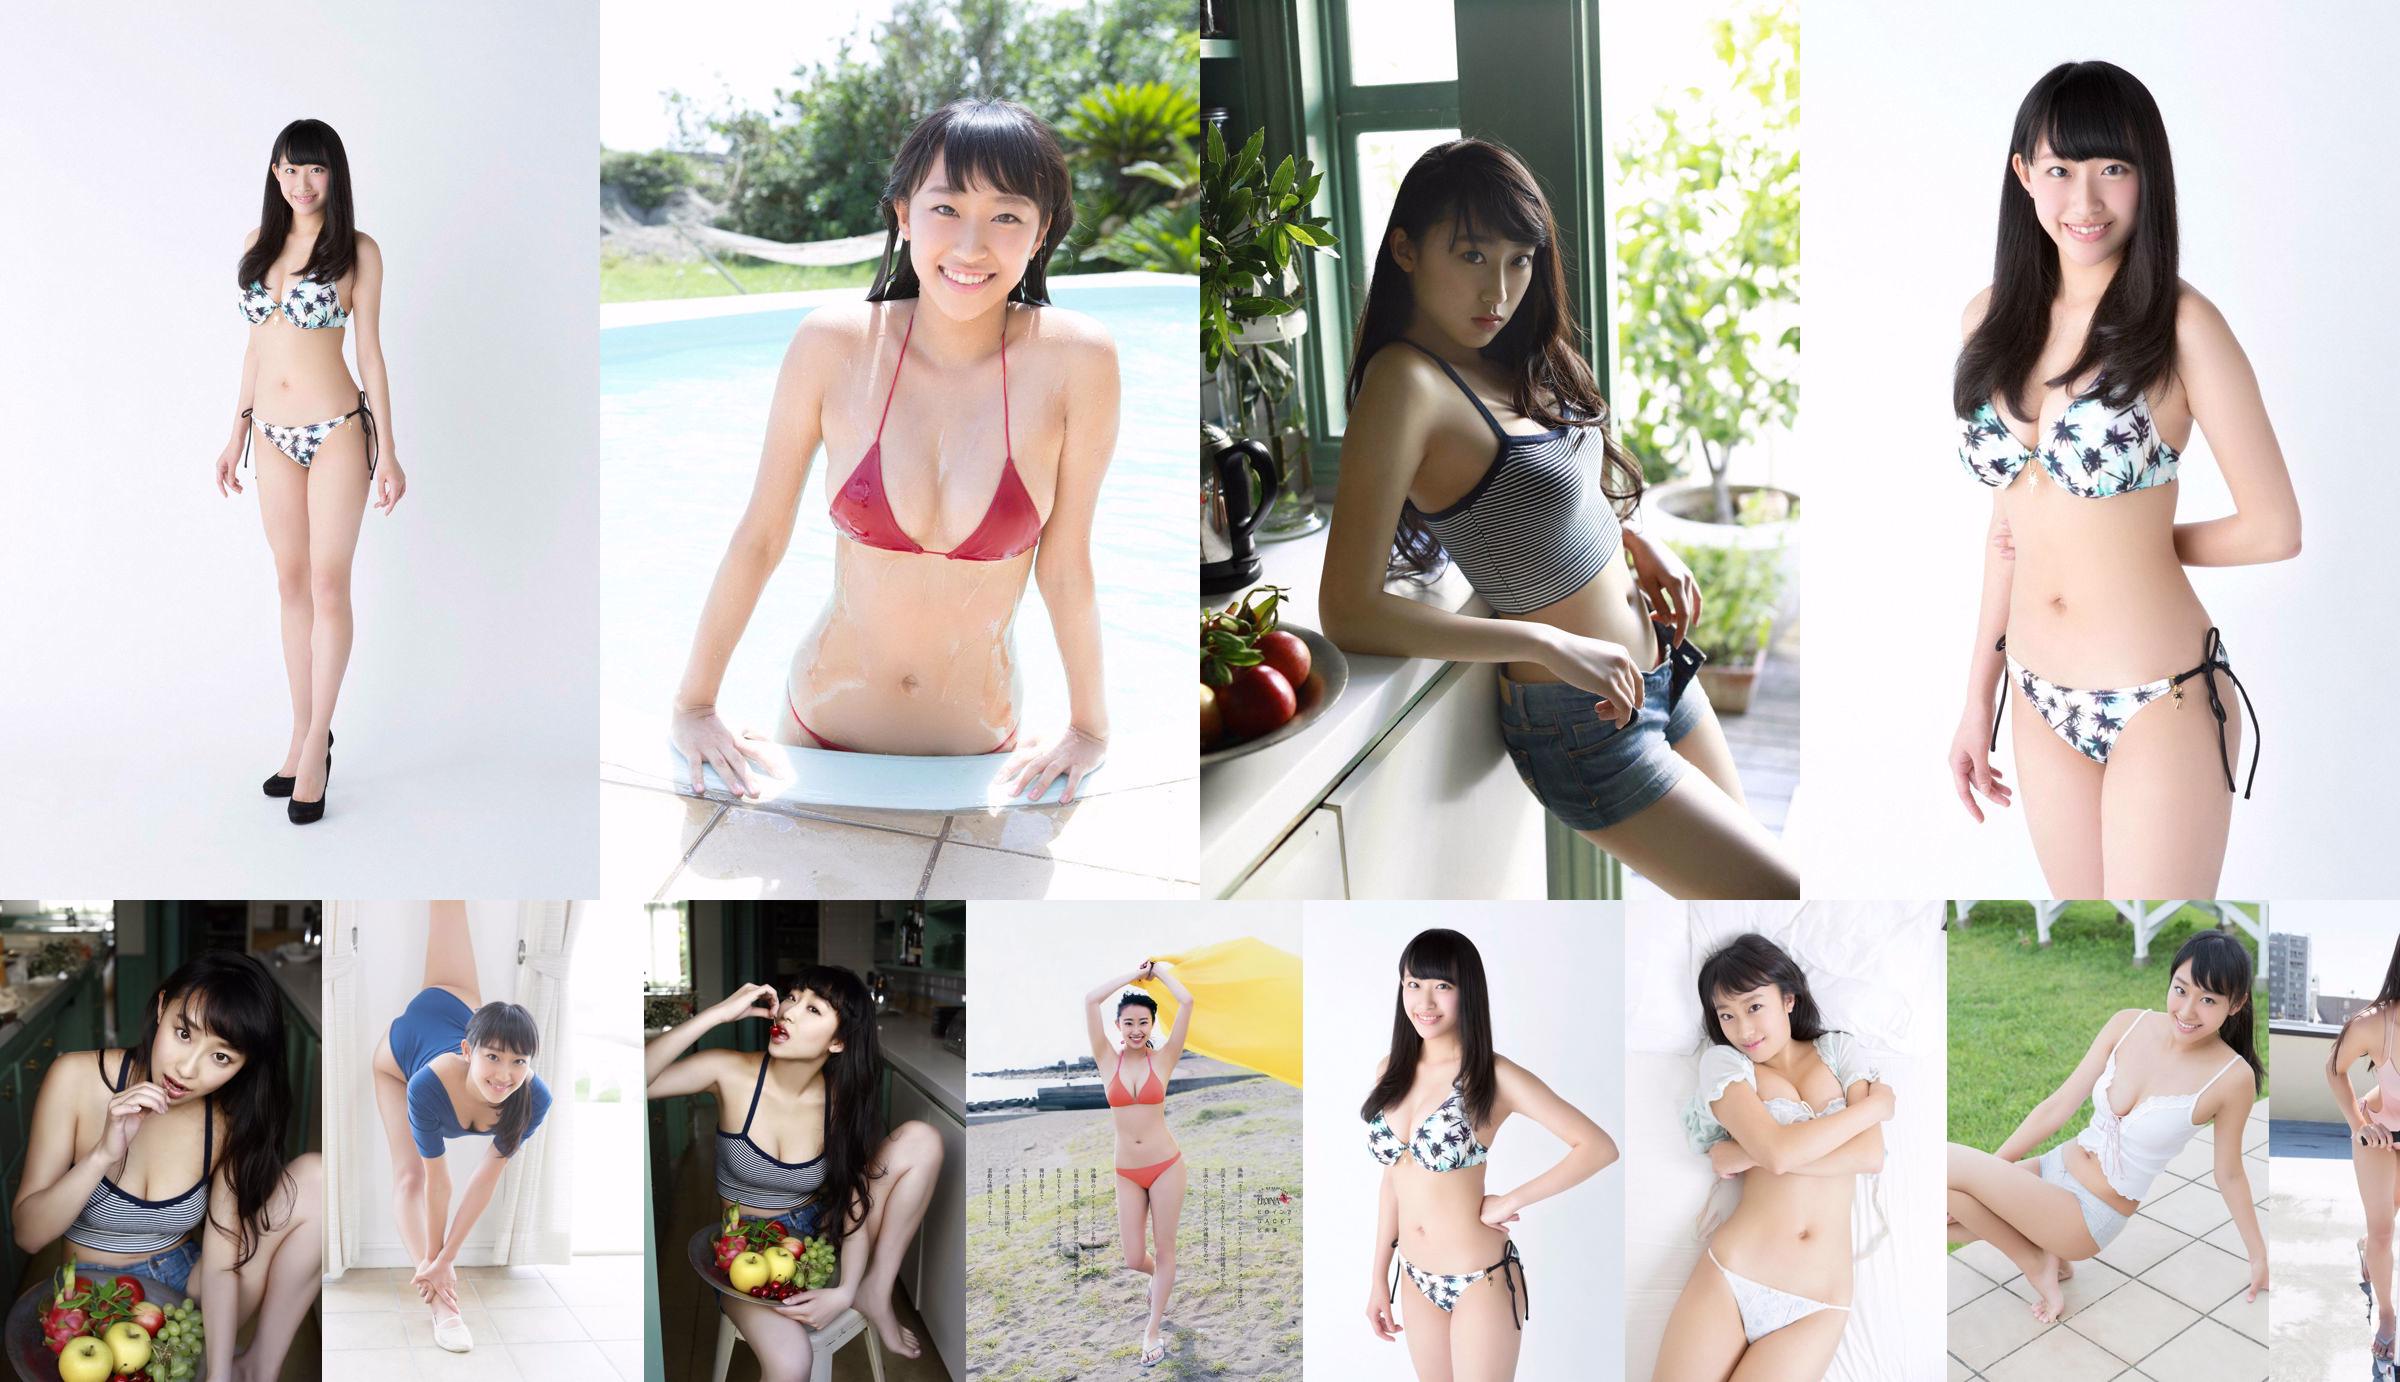 Matsura Sa Yuri Matsura Kaori ミリオンガールズZ [Jong Dier] 2014 No.14 Photo Magazine No.de3b29 Pagina 3